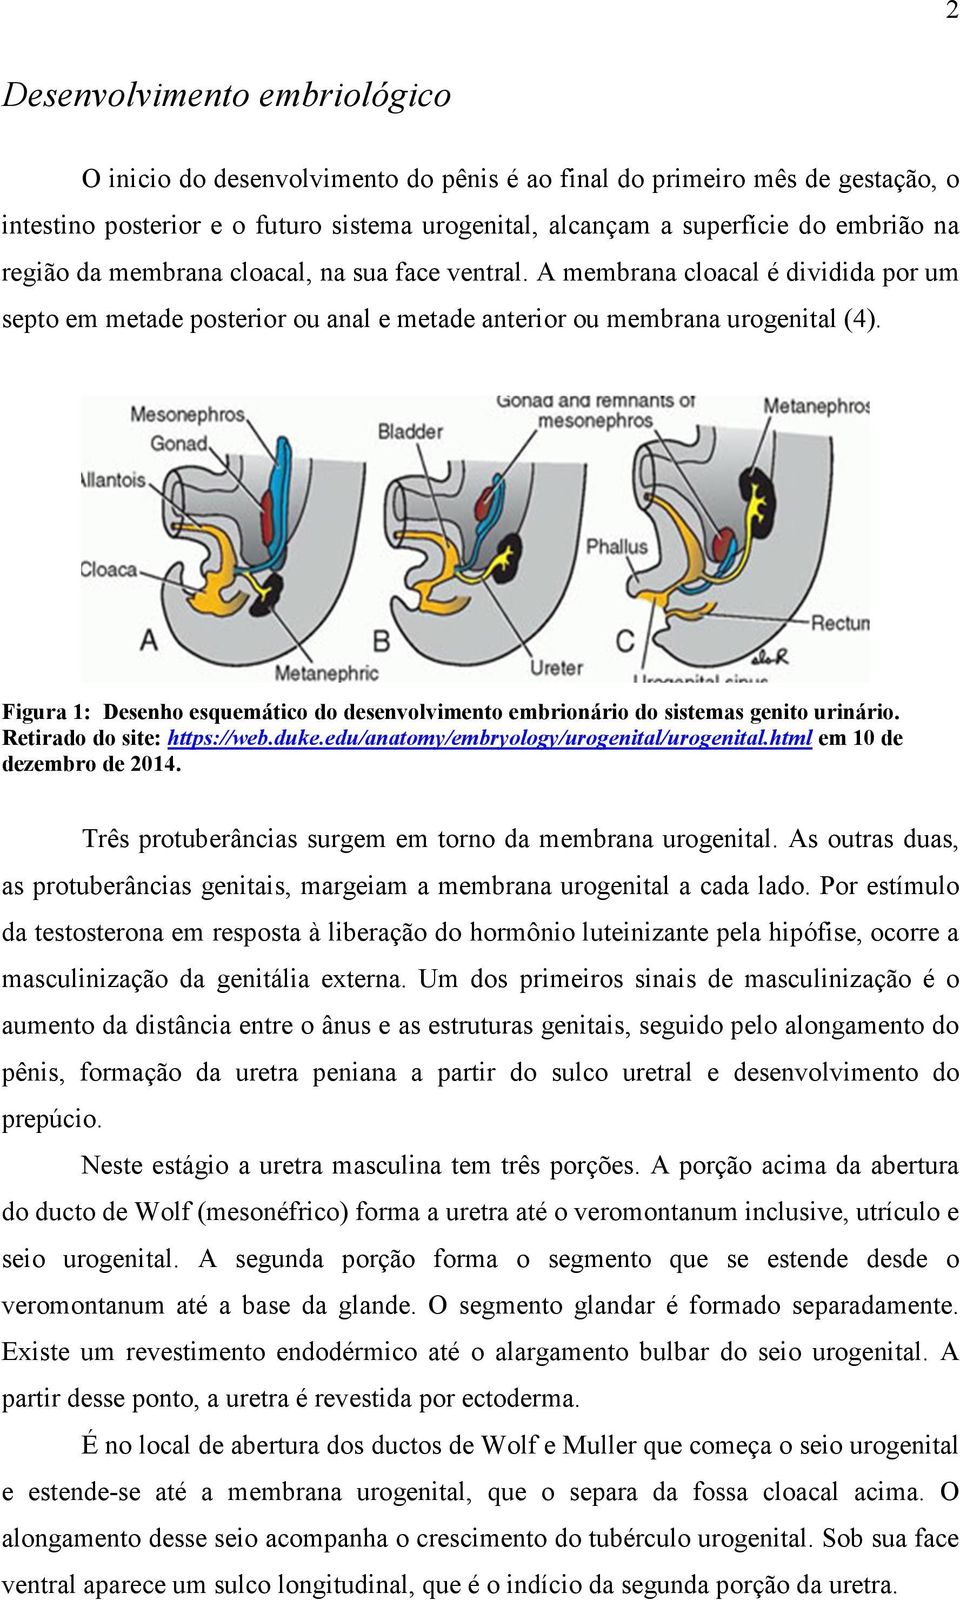 Figura 1: Desenho esquemático do desenvolvimento embrionário do sistemas genito urinário. Retirado do site: https://web.duke.edu/anatomy/embryology/urogenital/urogenital.